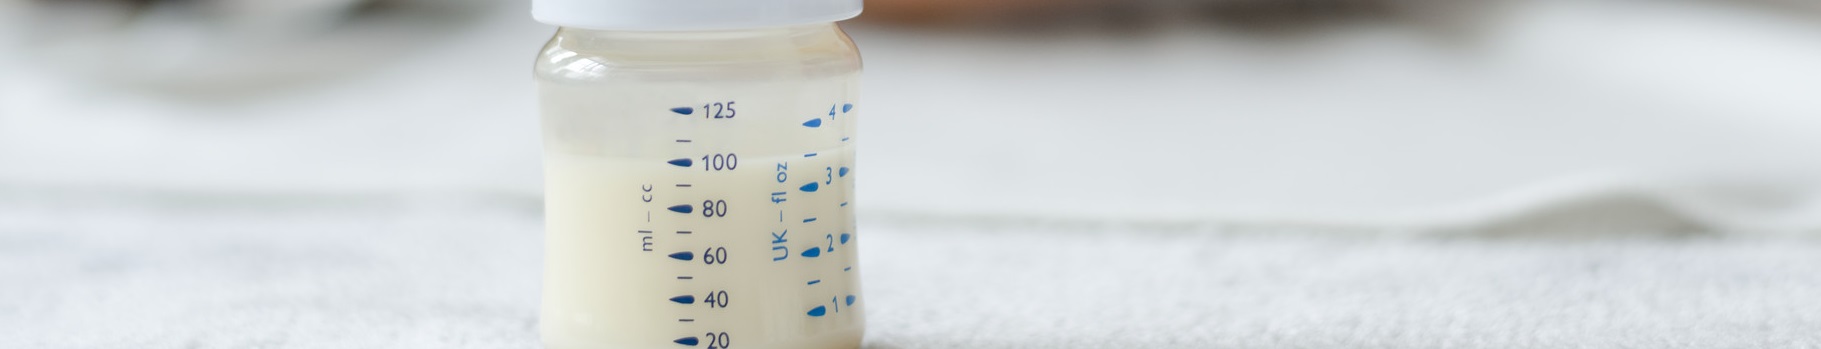 Przechowywanie mleka modyfikowanego dla dzieci. Co rodzice powinni wiedzieć o tym zagadnieniu?